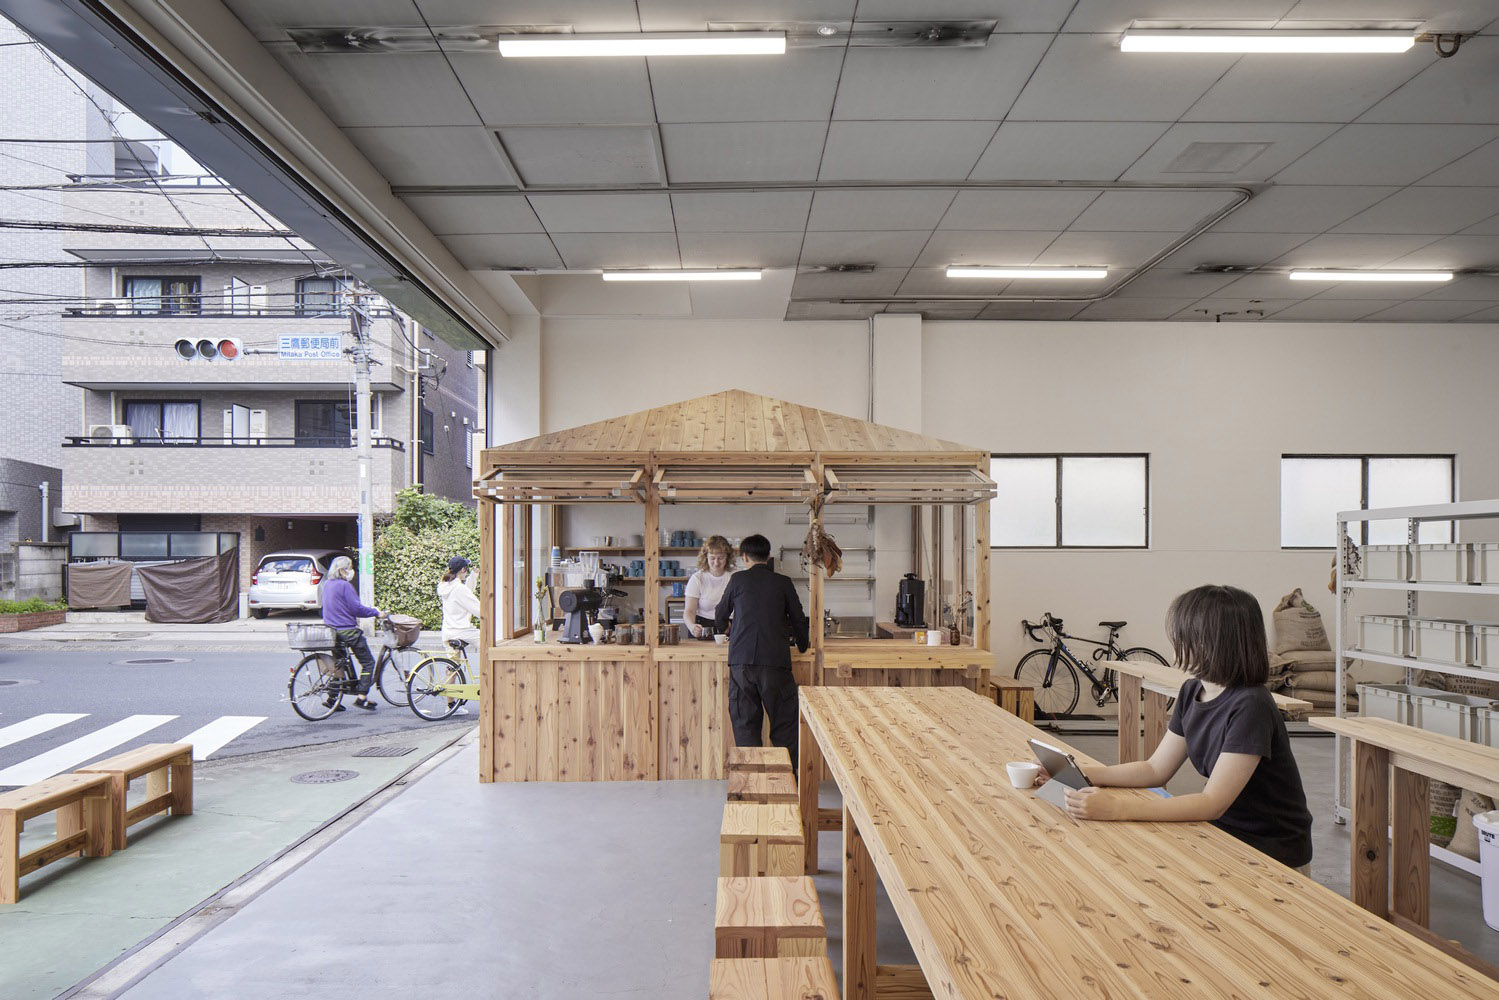 咖啡厅设计,小咖啡厅设计,Spicy Architects,咖啡厅设计案例,咖啡厅设计方案,街边咖啡店设计,115㎡,日本,东京都,LIGHT UP COFFEE